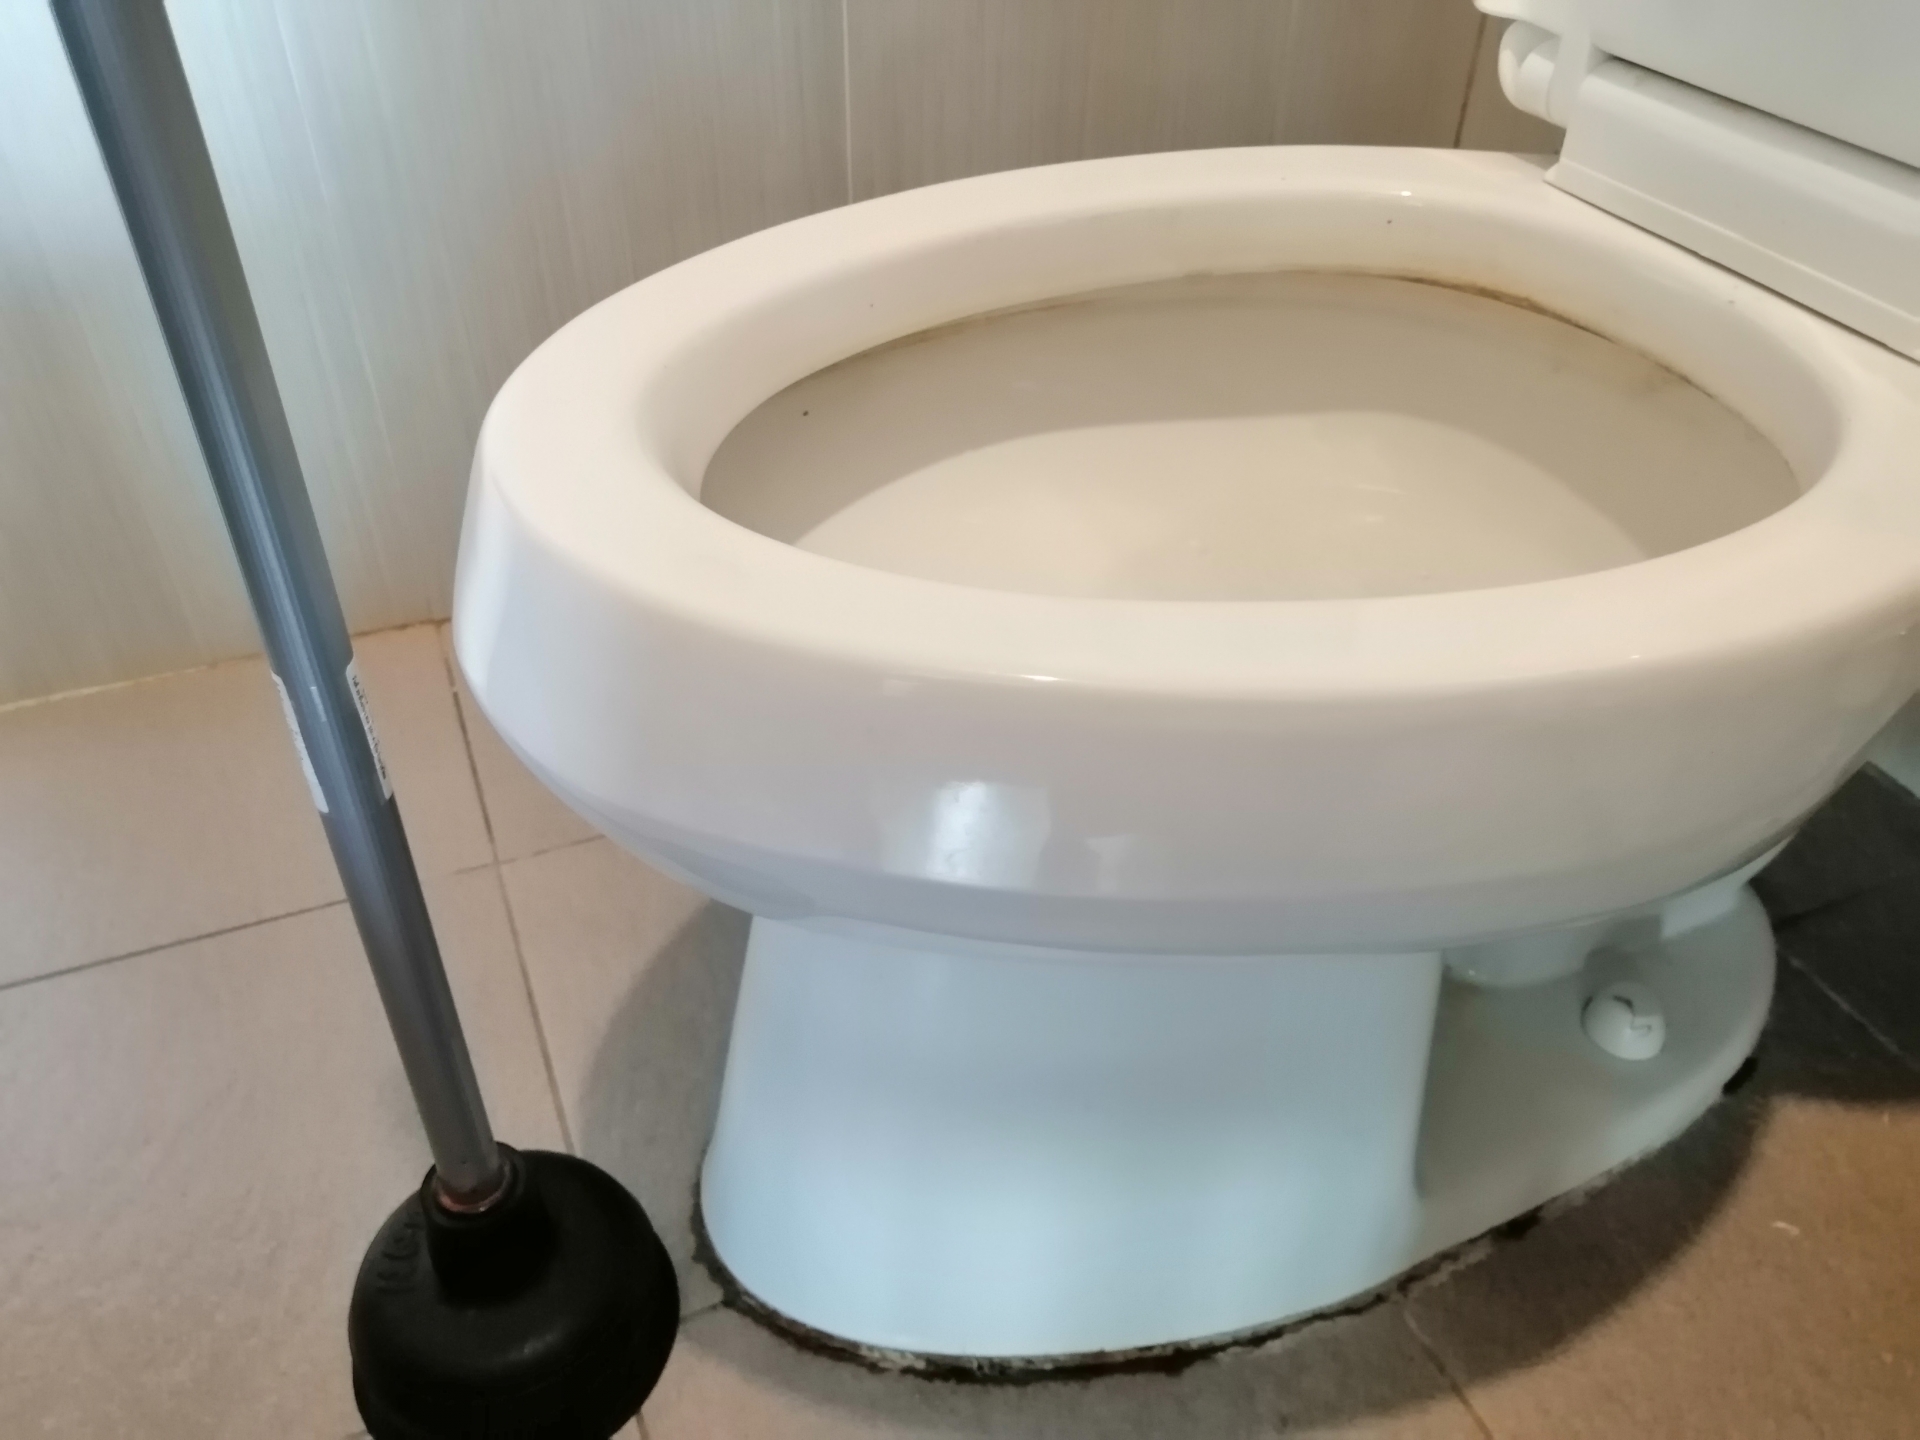 トイレつまりが起きる原因とその対処法を解説 東京水道センター